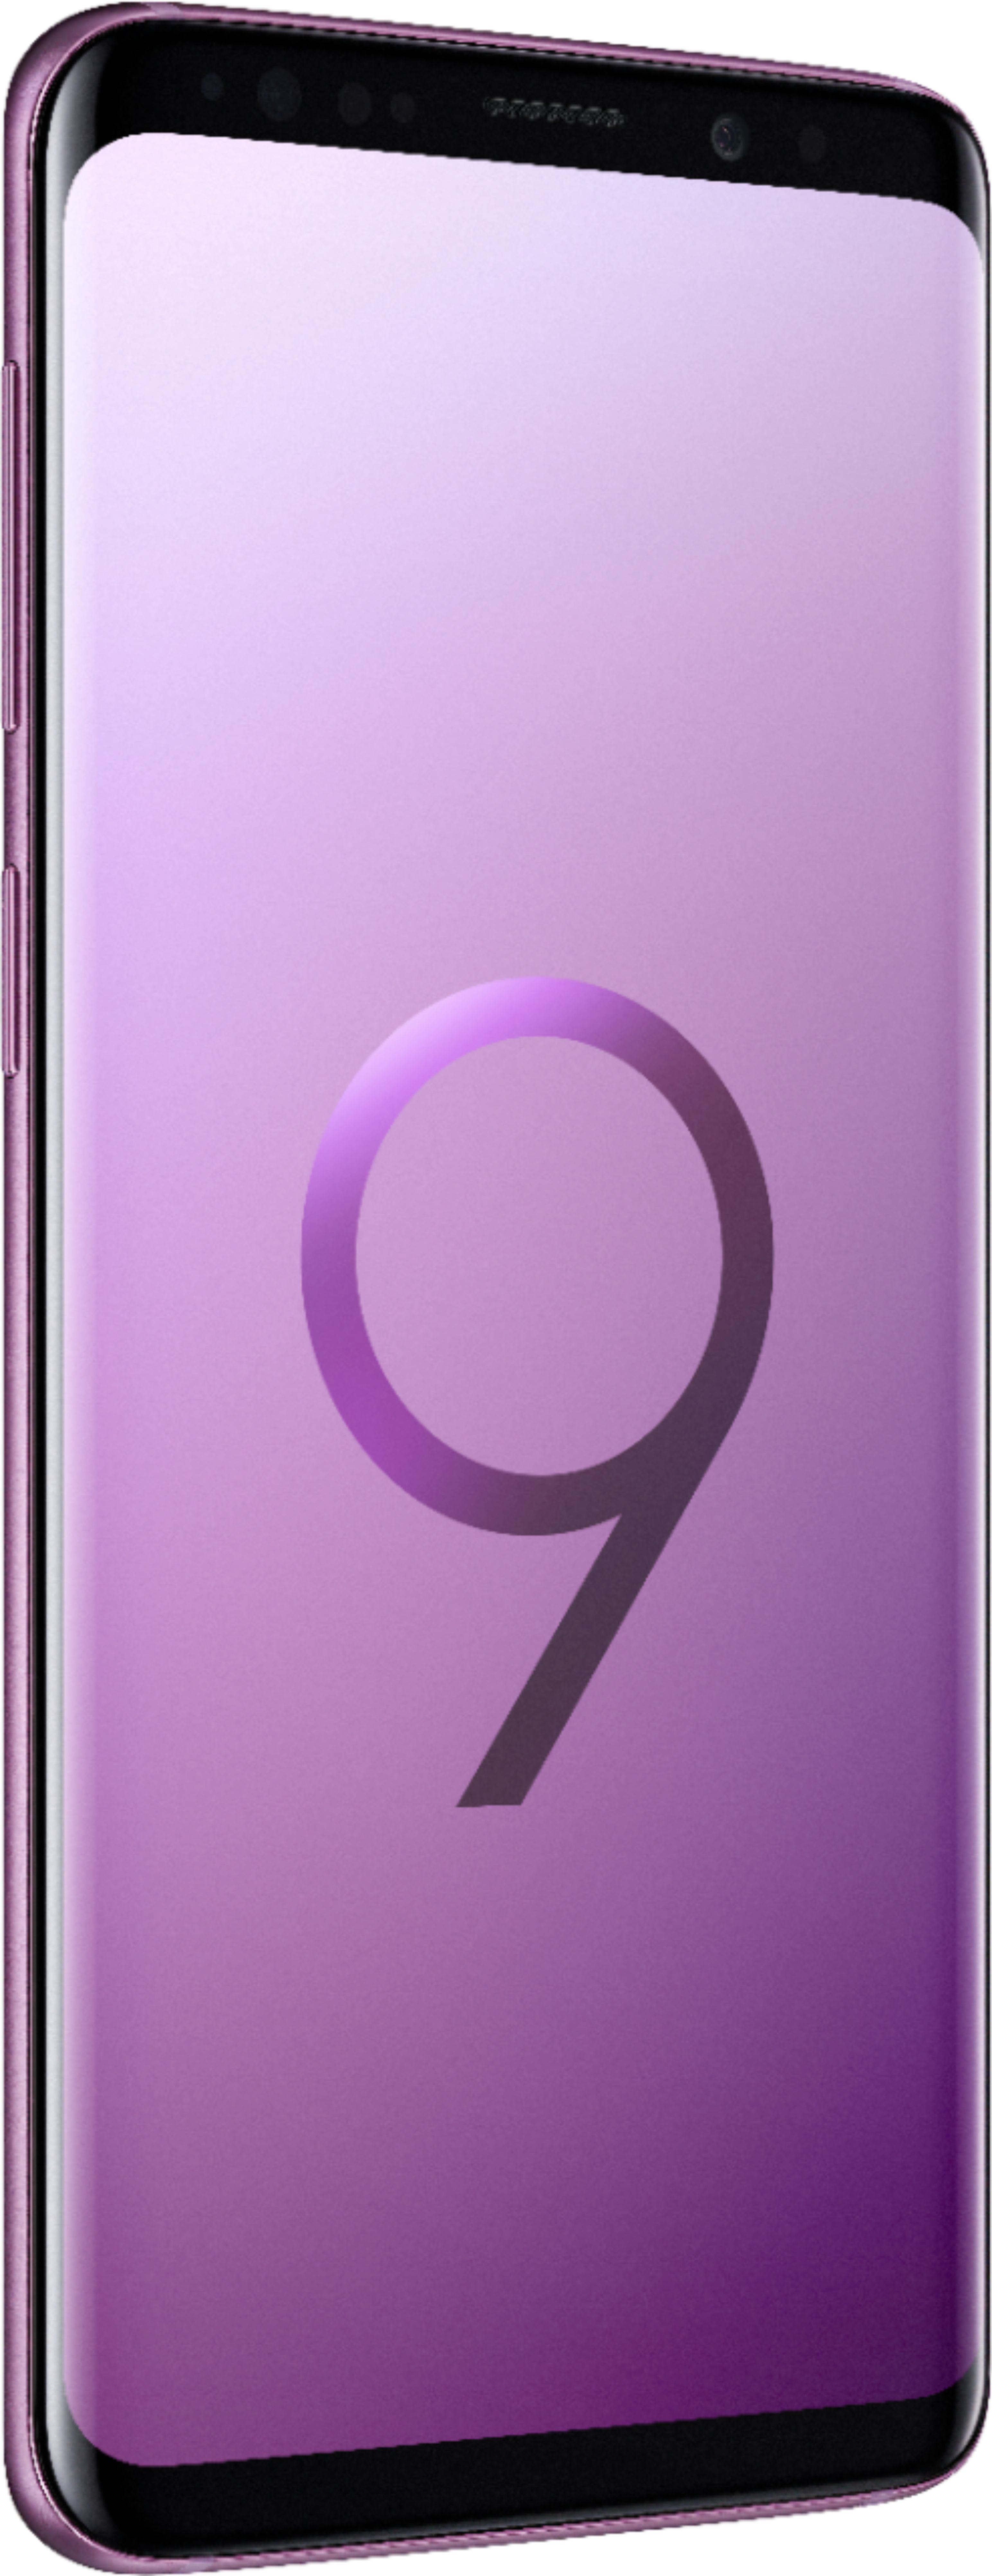 Best Buy: Samsung Galaxy S9 64GB Lilac Purple (Verizon) SMG960UZPV